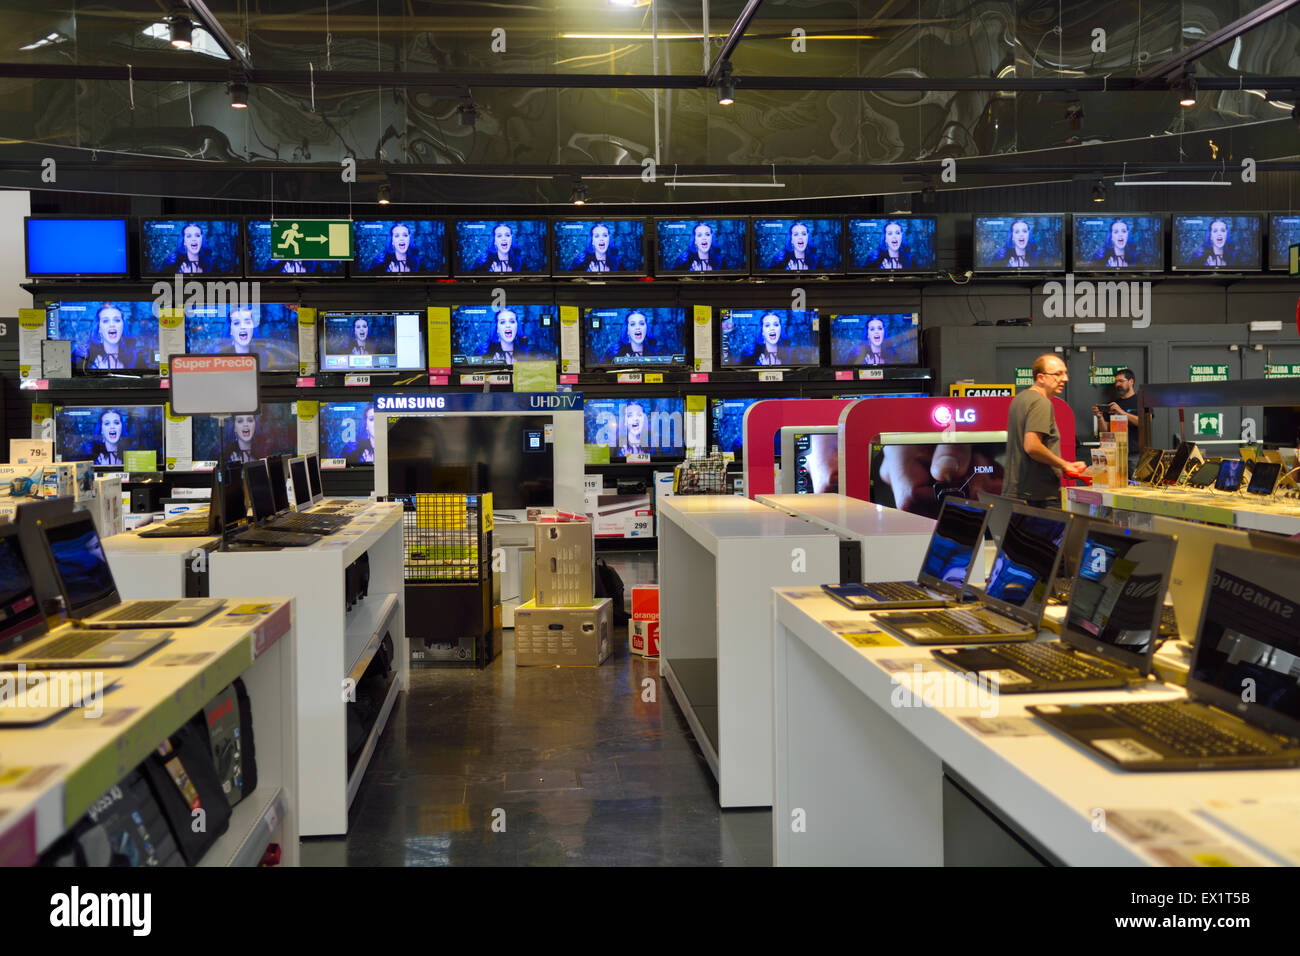 Visualizzazione dei televisori e computer laptop in un Ipermercato Carrefour. Madrid, Plaza Norte 2 shopping centre, Spagna Foto Stock